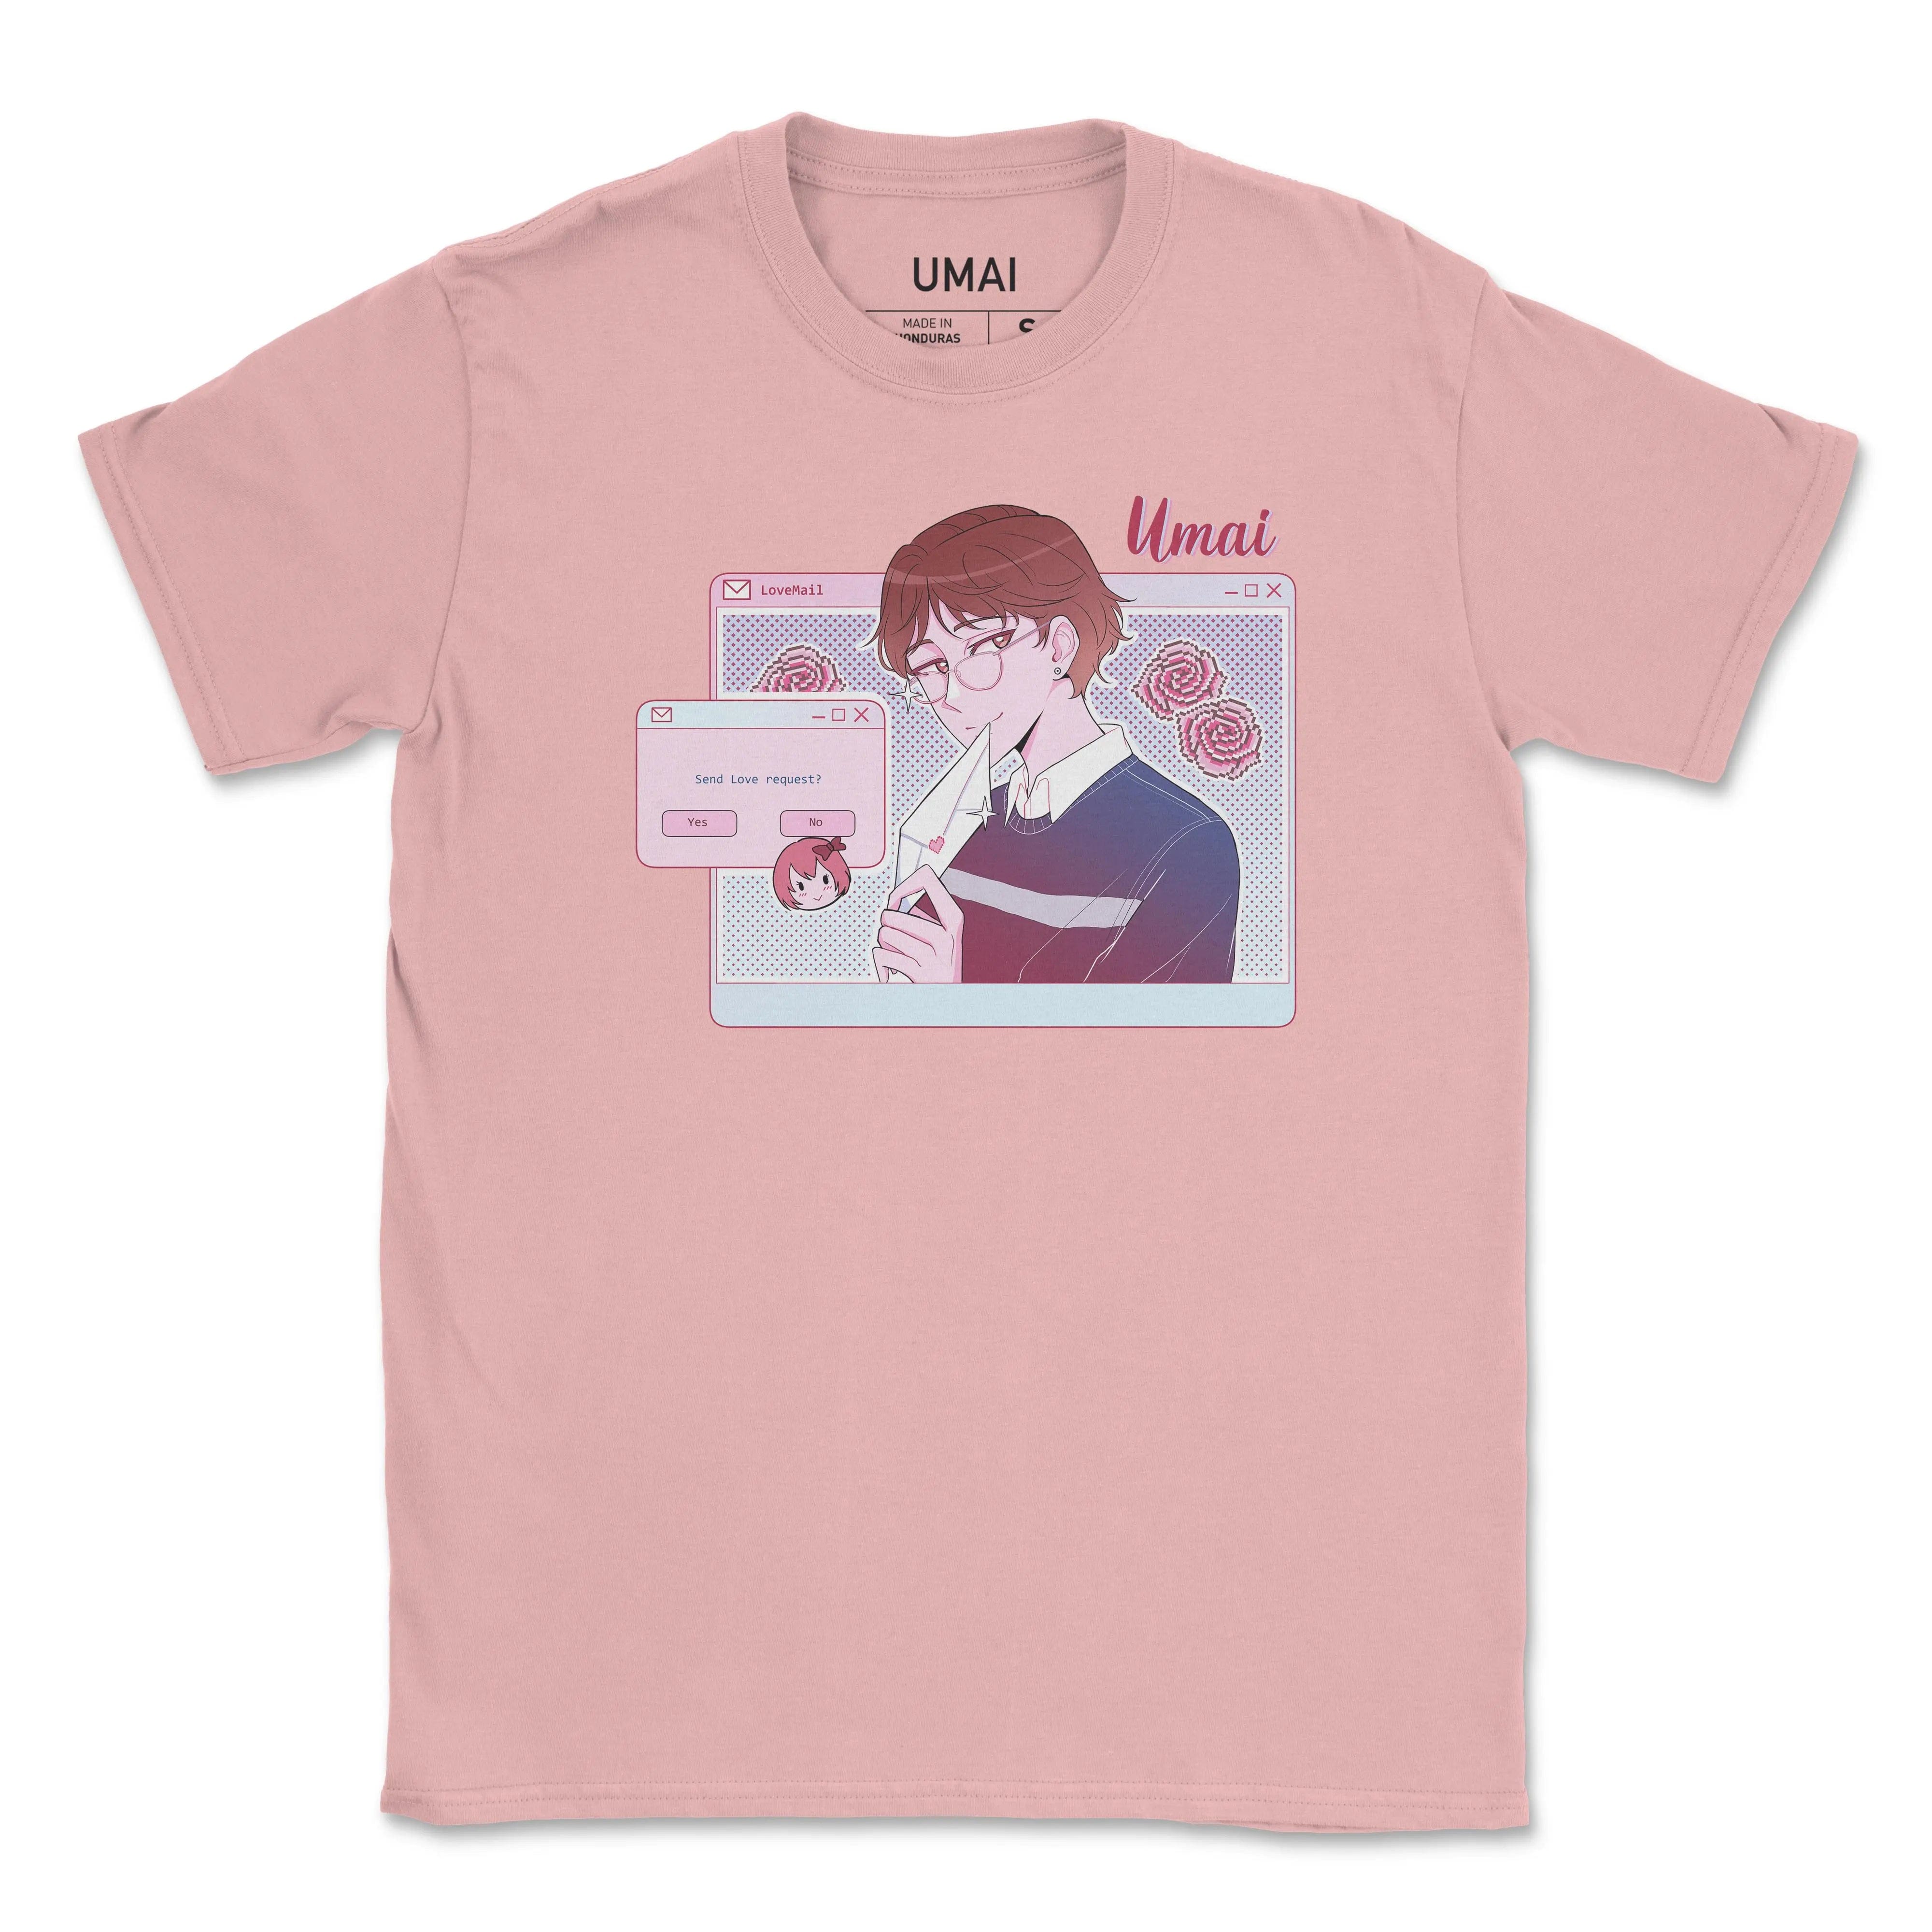 Exclusivo de febrero de 2021 (Niño) • Camiseta